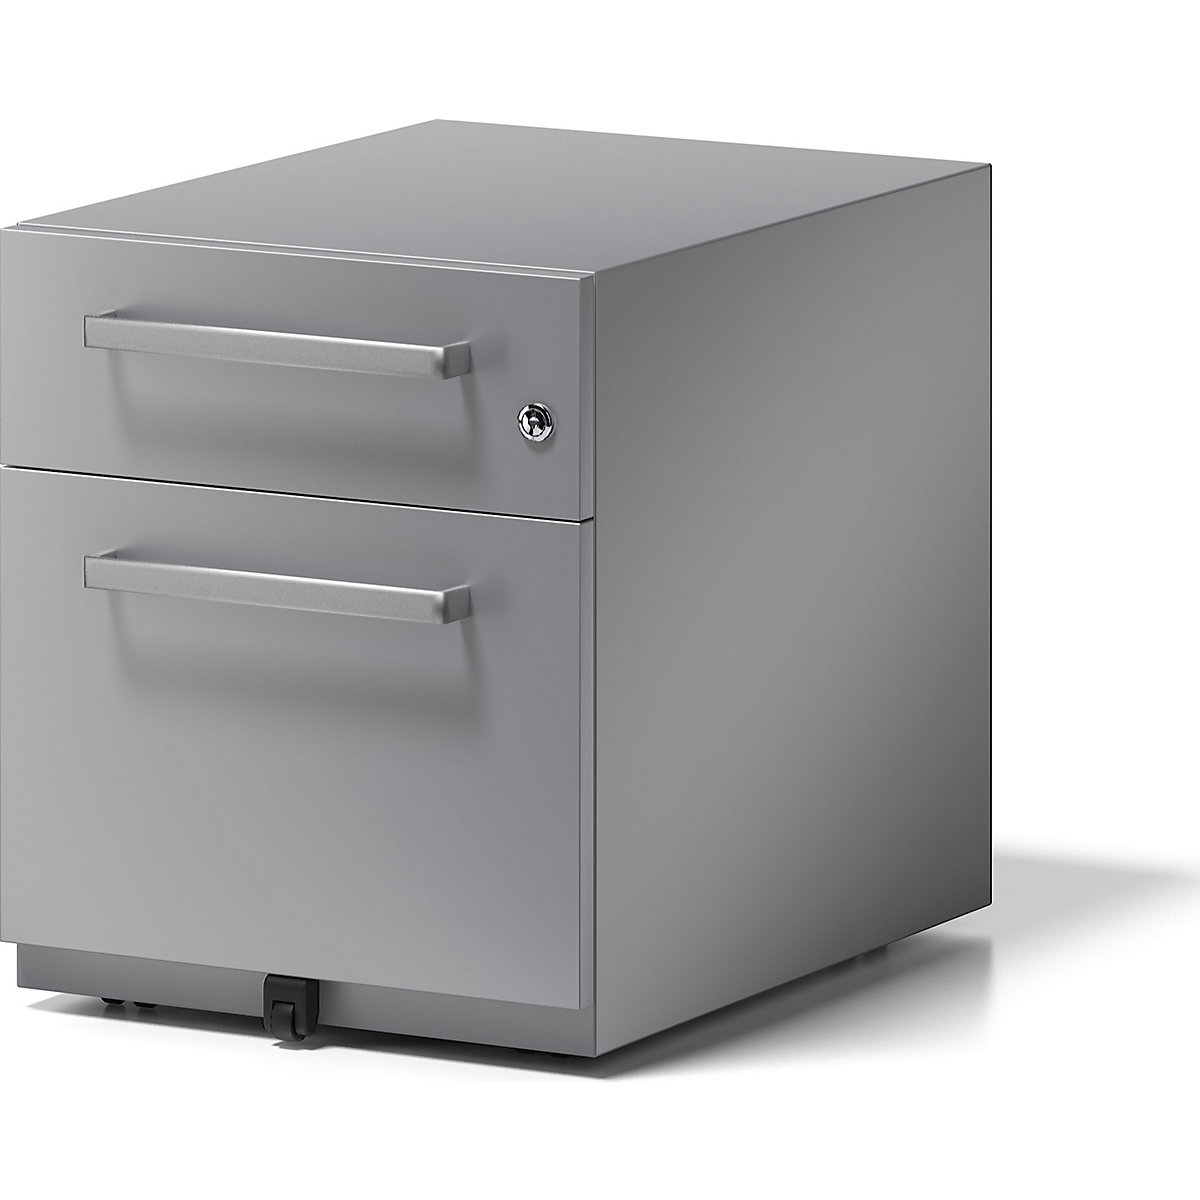 BISLEY – Pojízdný kontejner Note™, s 1 kartotékou pro závěsné složky a 1 univerzální zásuvkou, v x š x h 495 x 420 x 565 mm, s rukojetí, stříbrná